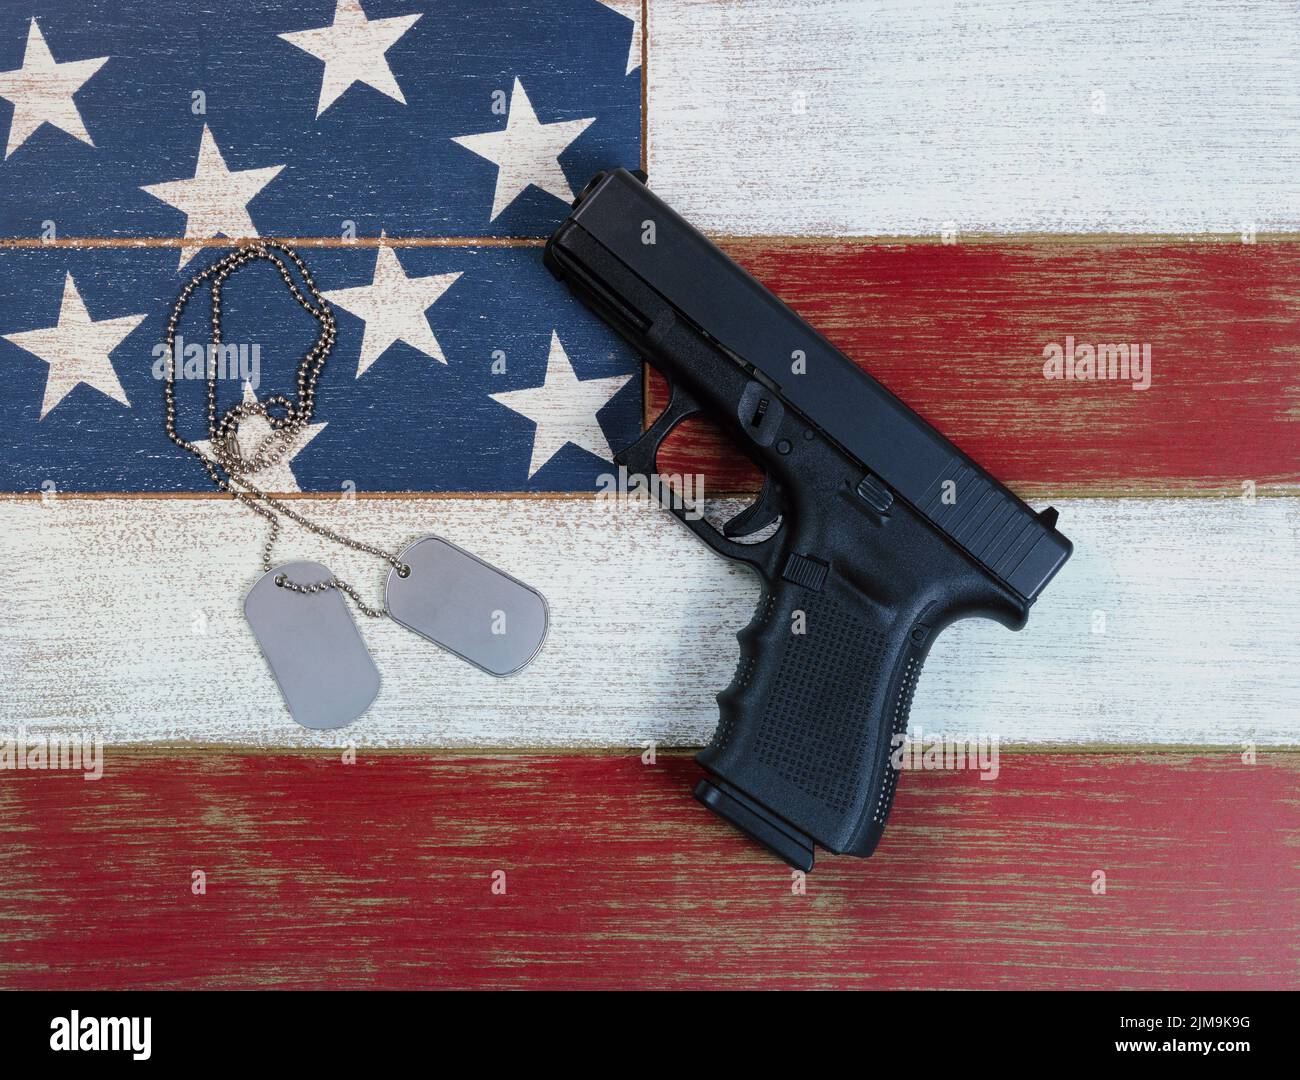 Pistolas y etiquetas de identificación con los colores de la bandera nacional de EE.UU. Pintadas sobre tablas de madera descolorida Foto de stock